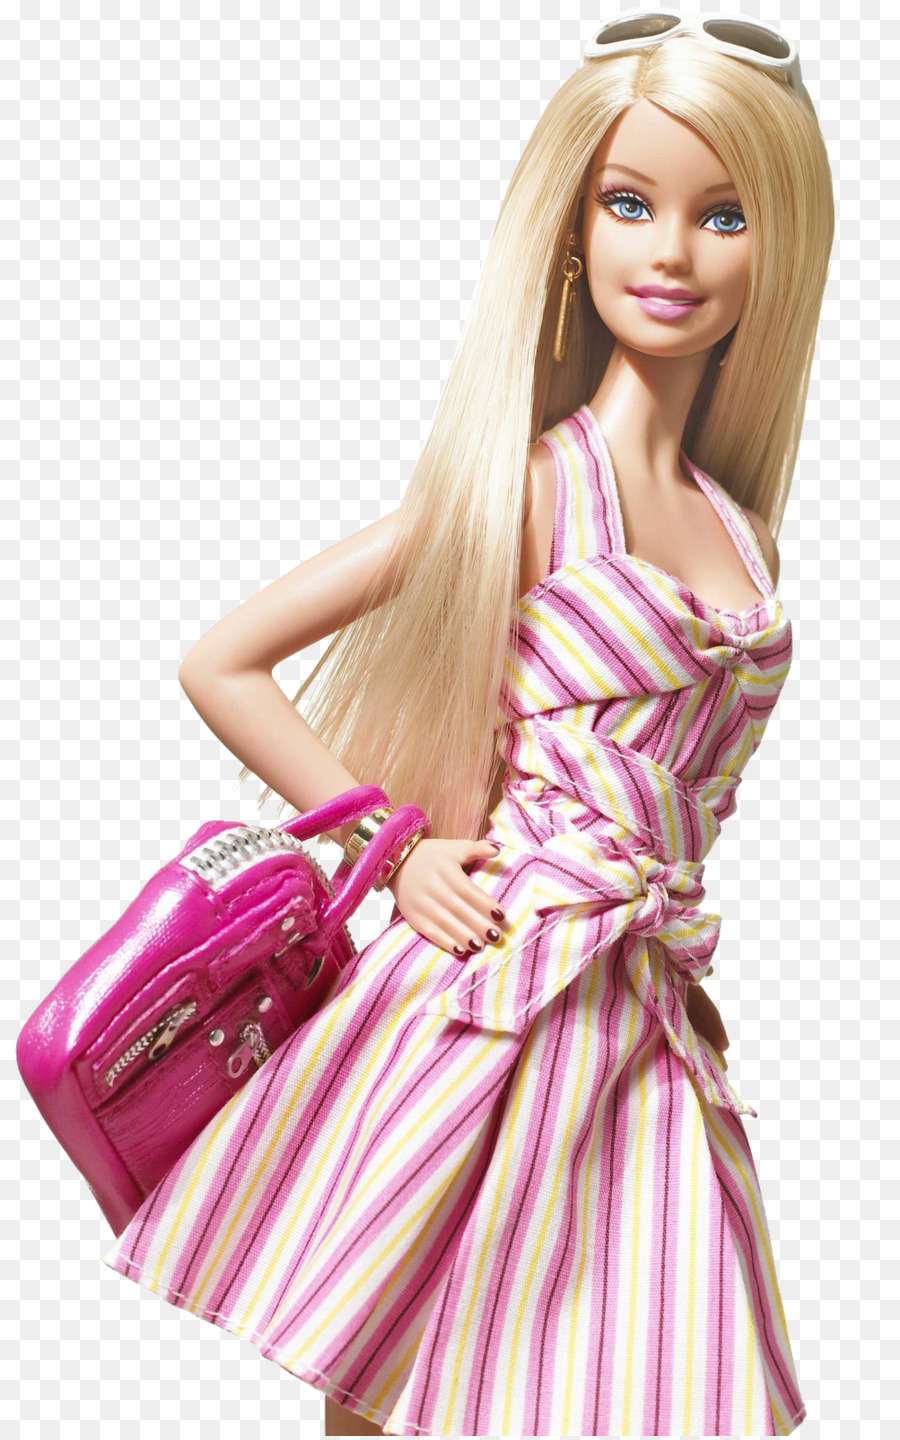 Ruth Handler Ken Barbie Doll Toy - Barbie Transparent Background png download - 1003*1600 - Free Transparent  png Download.